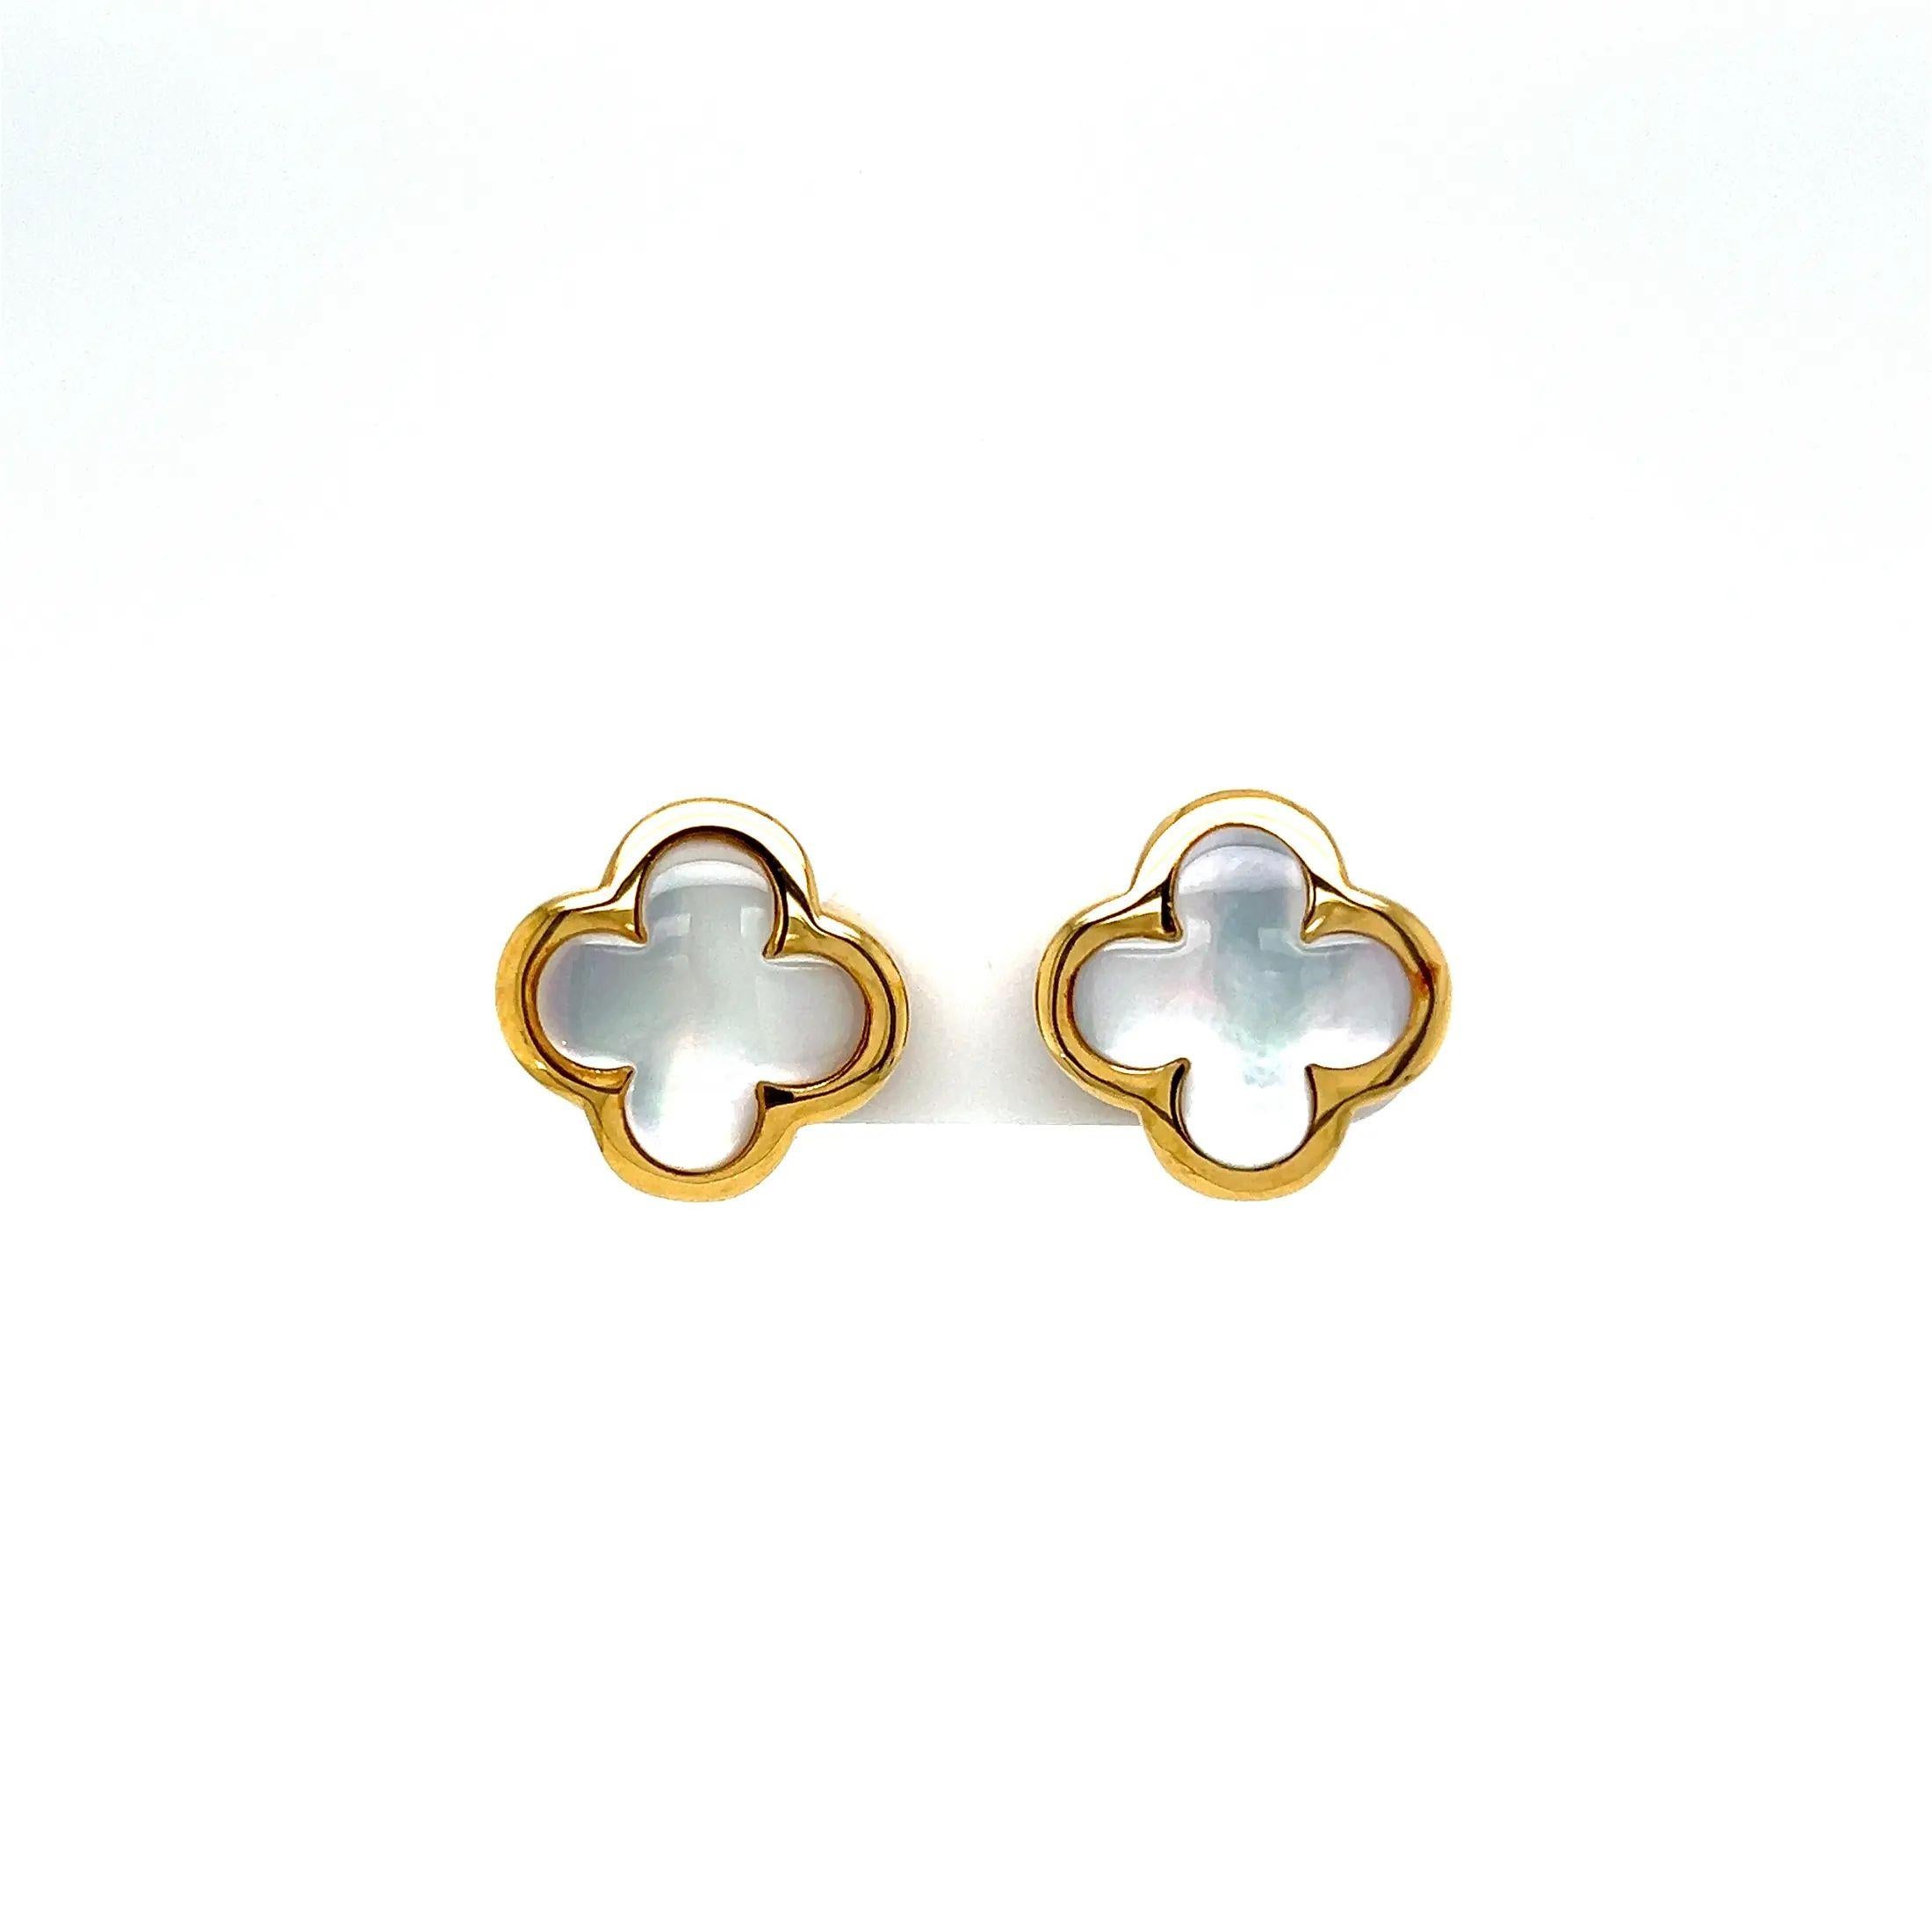 Einfach schön! Fein detaillierte, handgefertigte Alhambra-Klee-Ohrringe aus Perlmutt in MOP-Gold. Mit glänzendem, cremeweißem Perlmutt, von Hand gefasst in 18 Karat Gelbgold. Die Ohrringe messen ca. 0,6